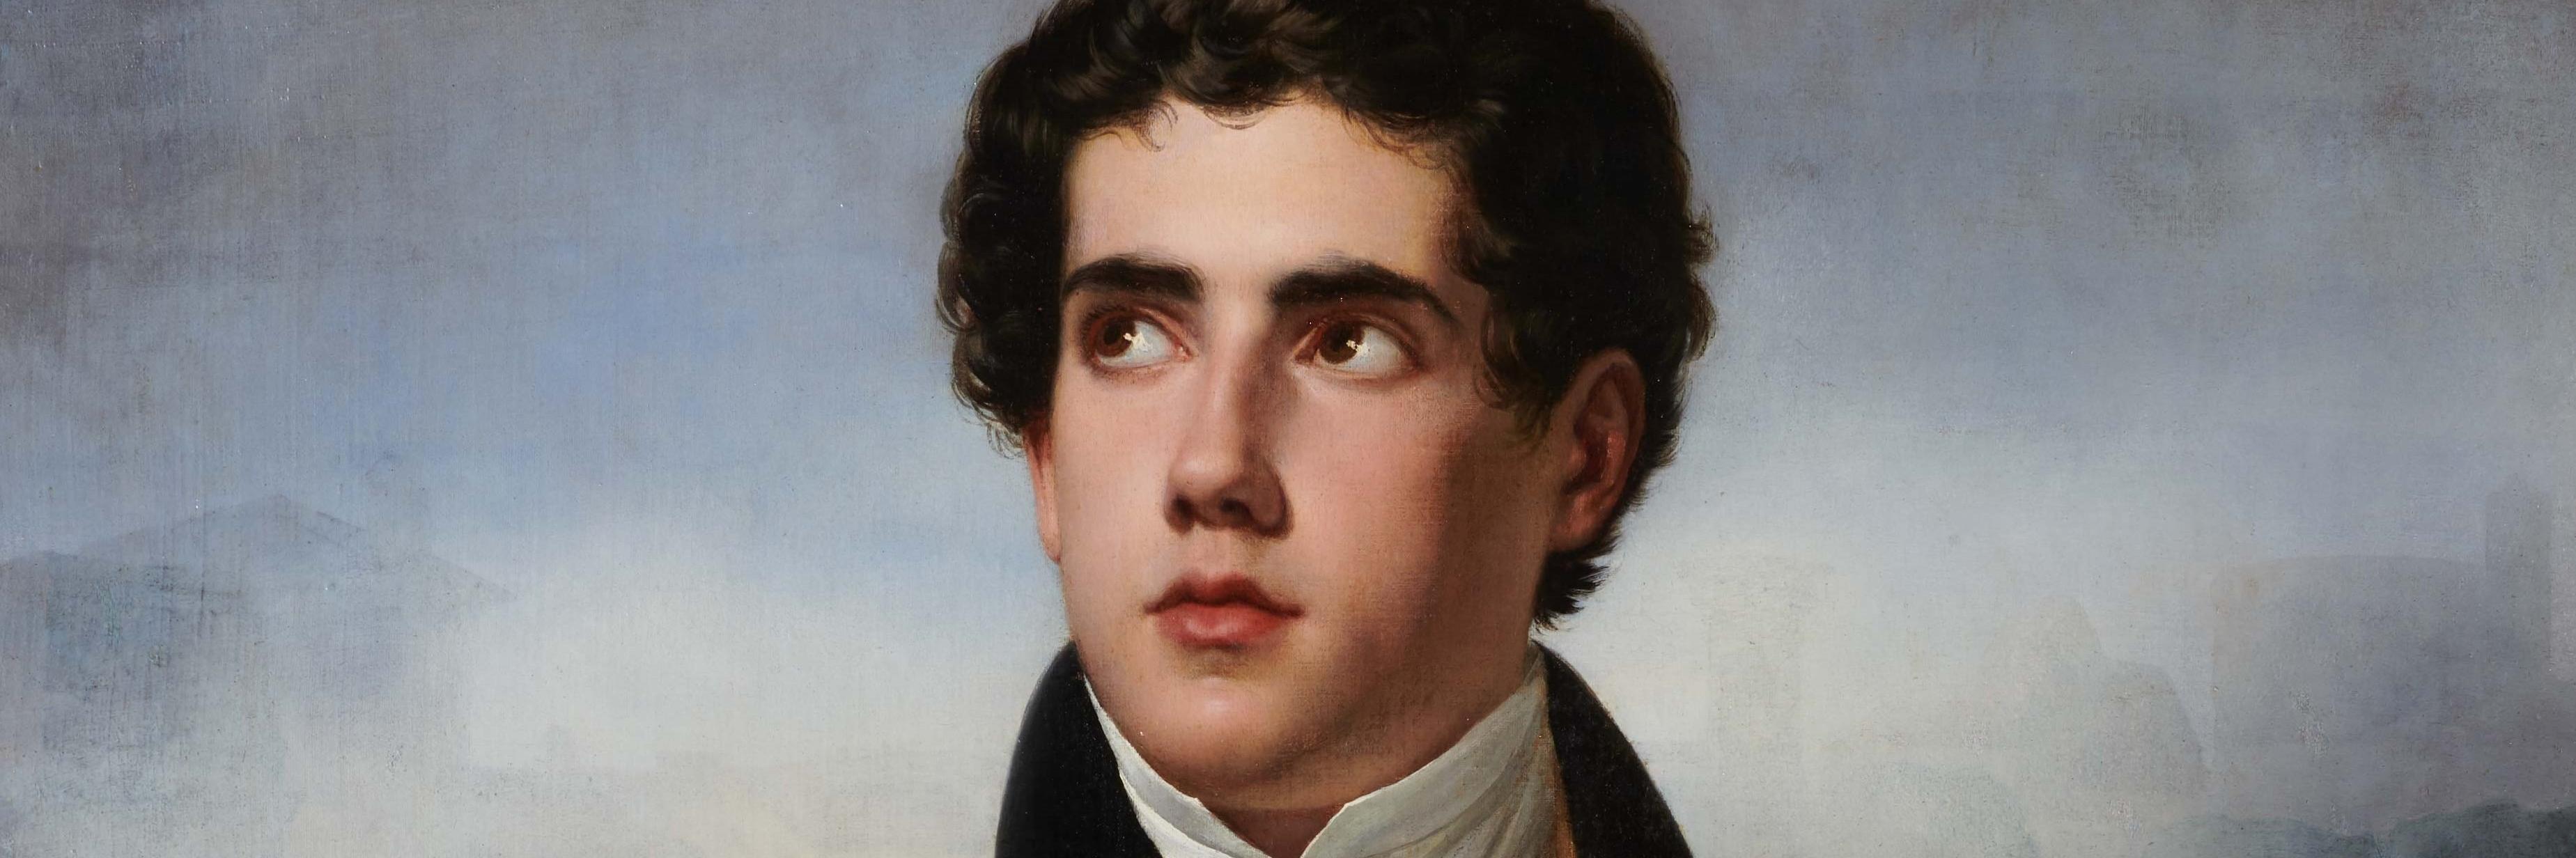 Retrato de José Manuel Ramírez Rosales, realizado por el pintor Raymond Monvoisin (1825). Col. MNBA.